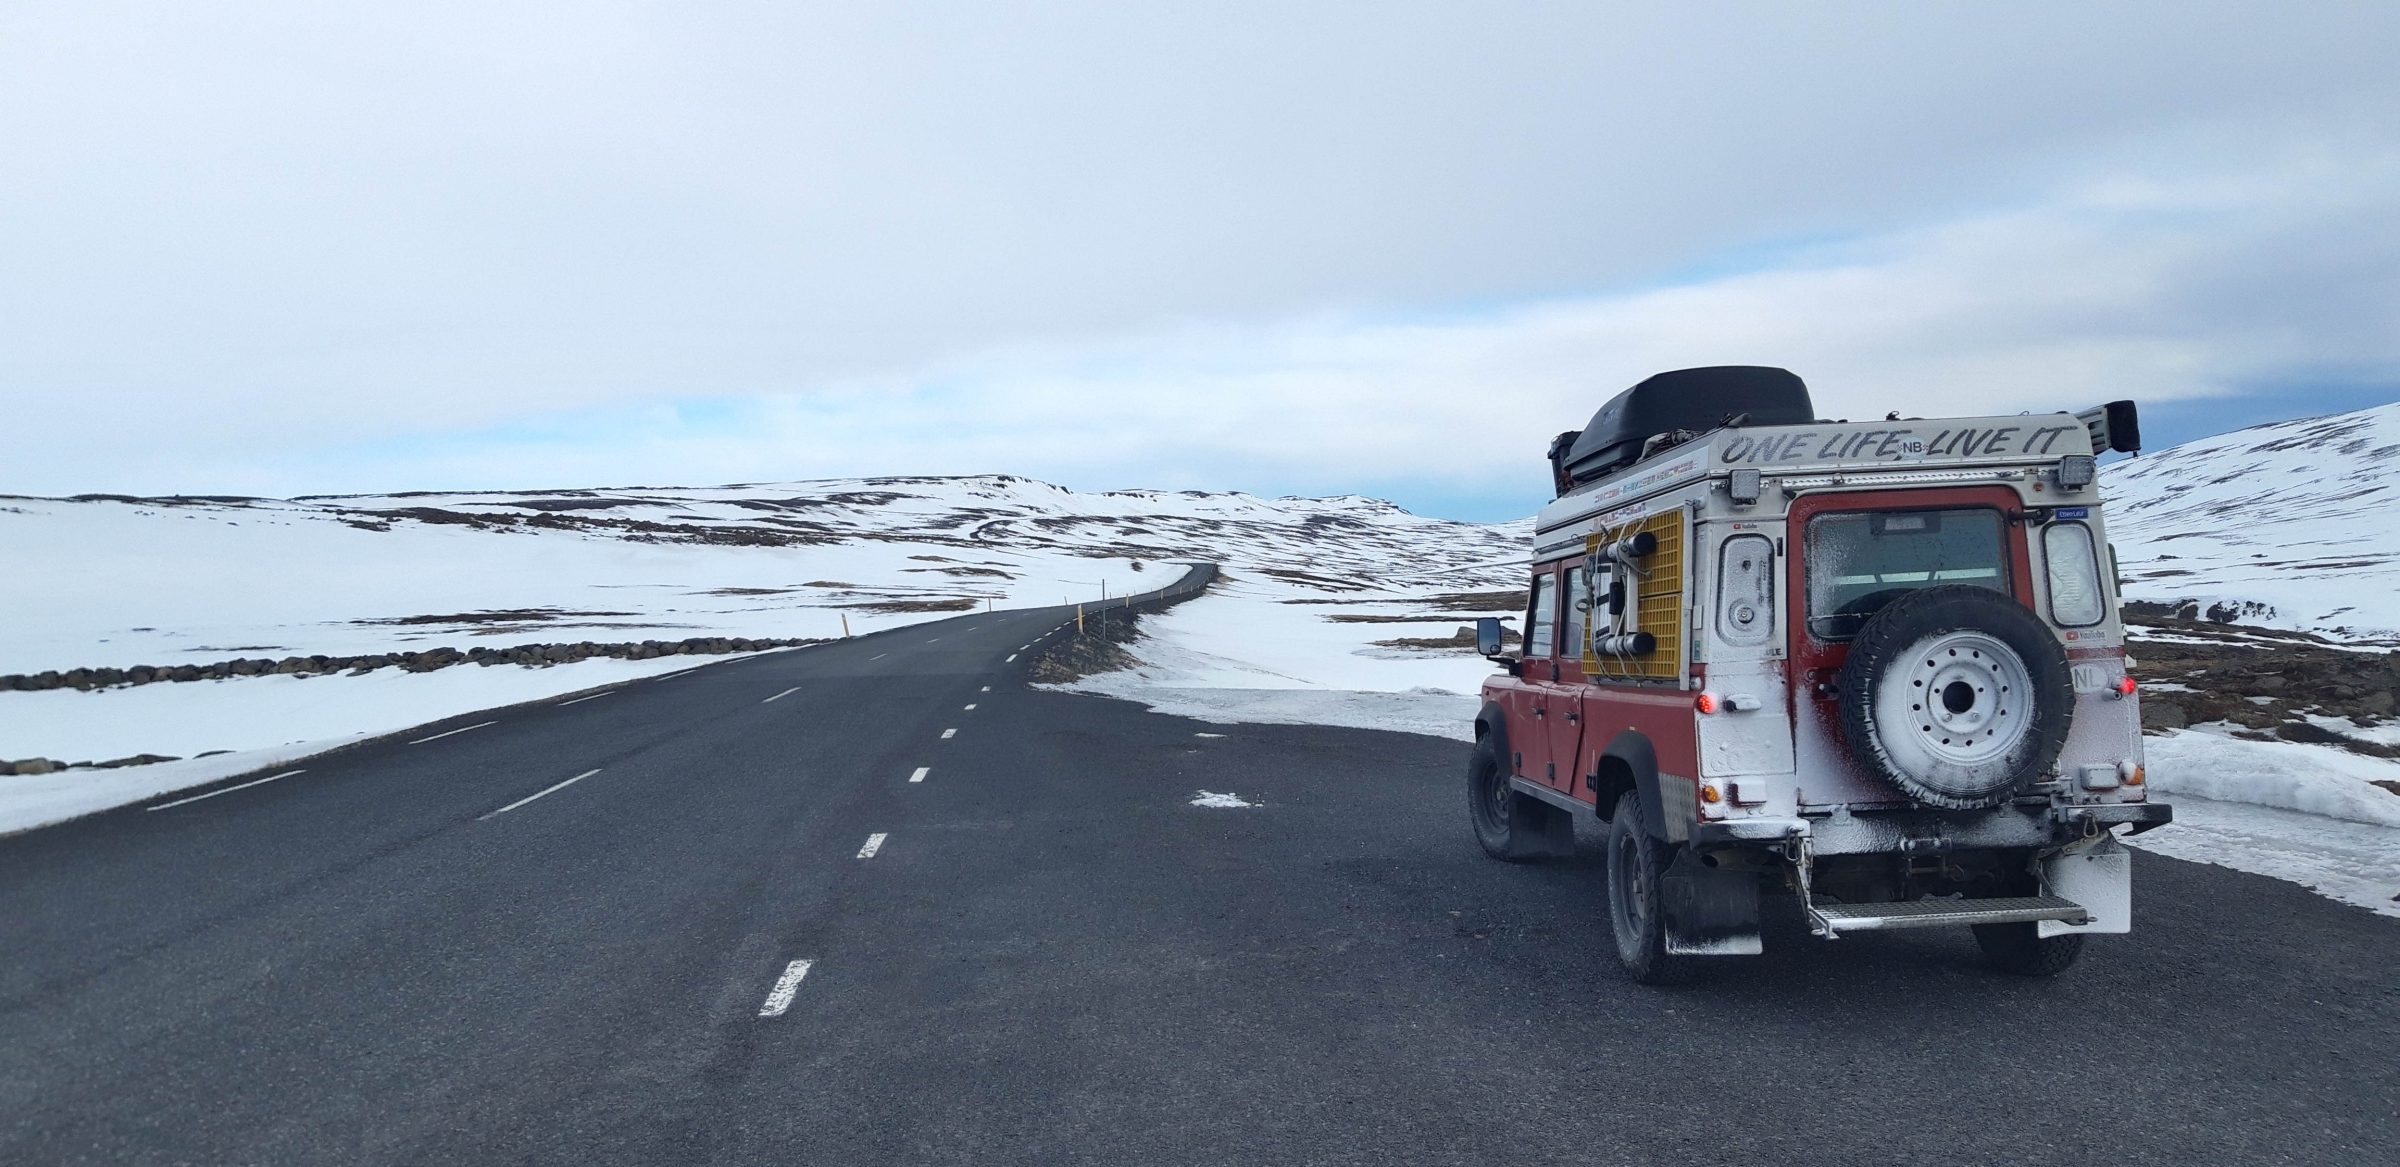 Día 2 en Islandia, una pequeña tormenta de nieve | Islandia e Islas Feroe en invierno